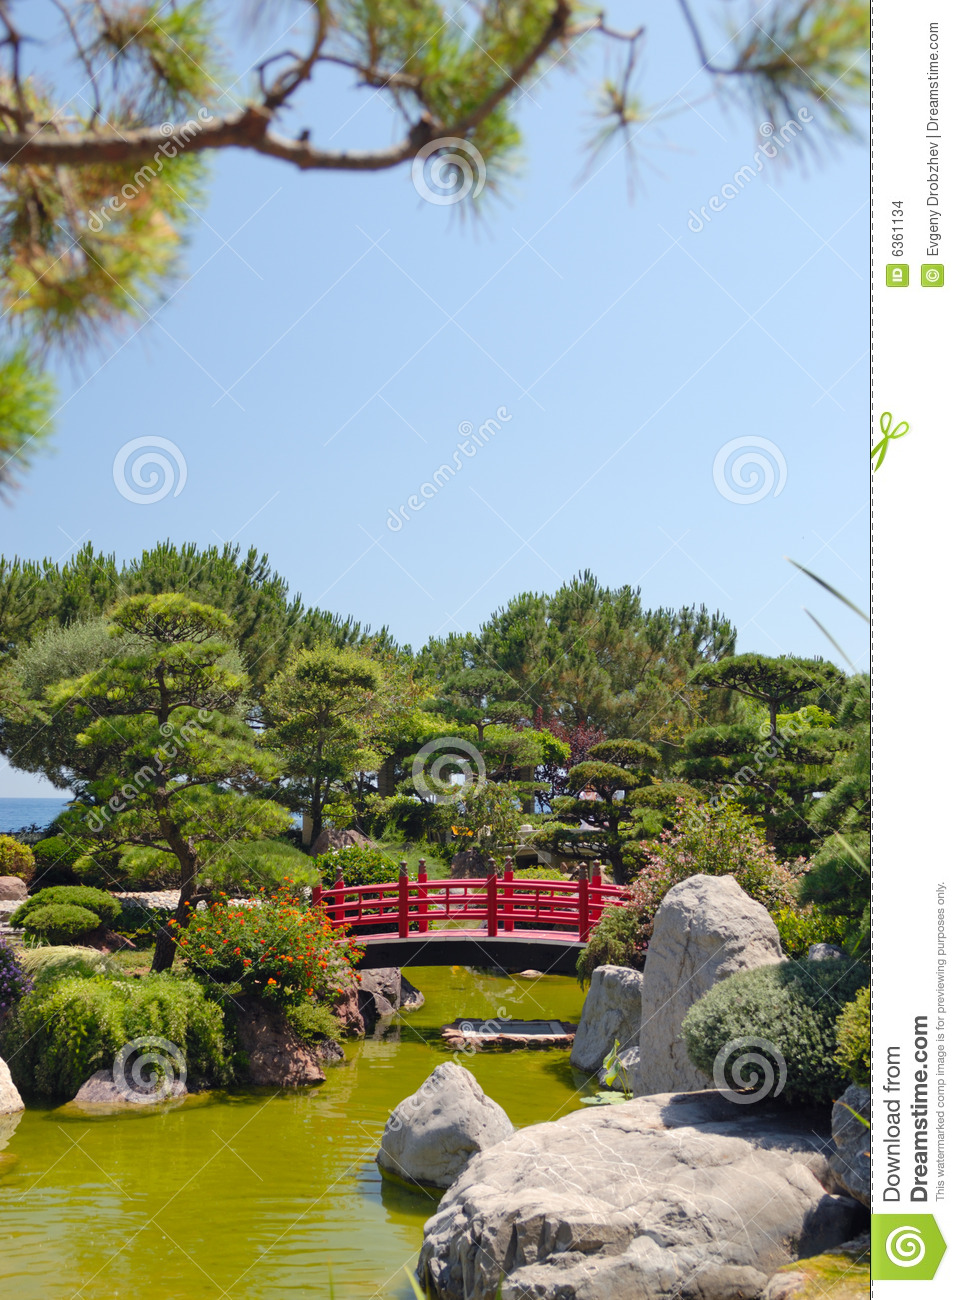 Japanese Bridge In Zen Garden Stock Images   Image  6361134